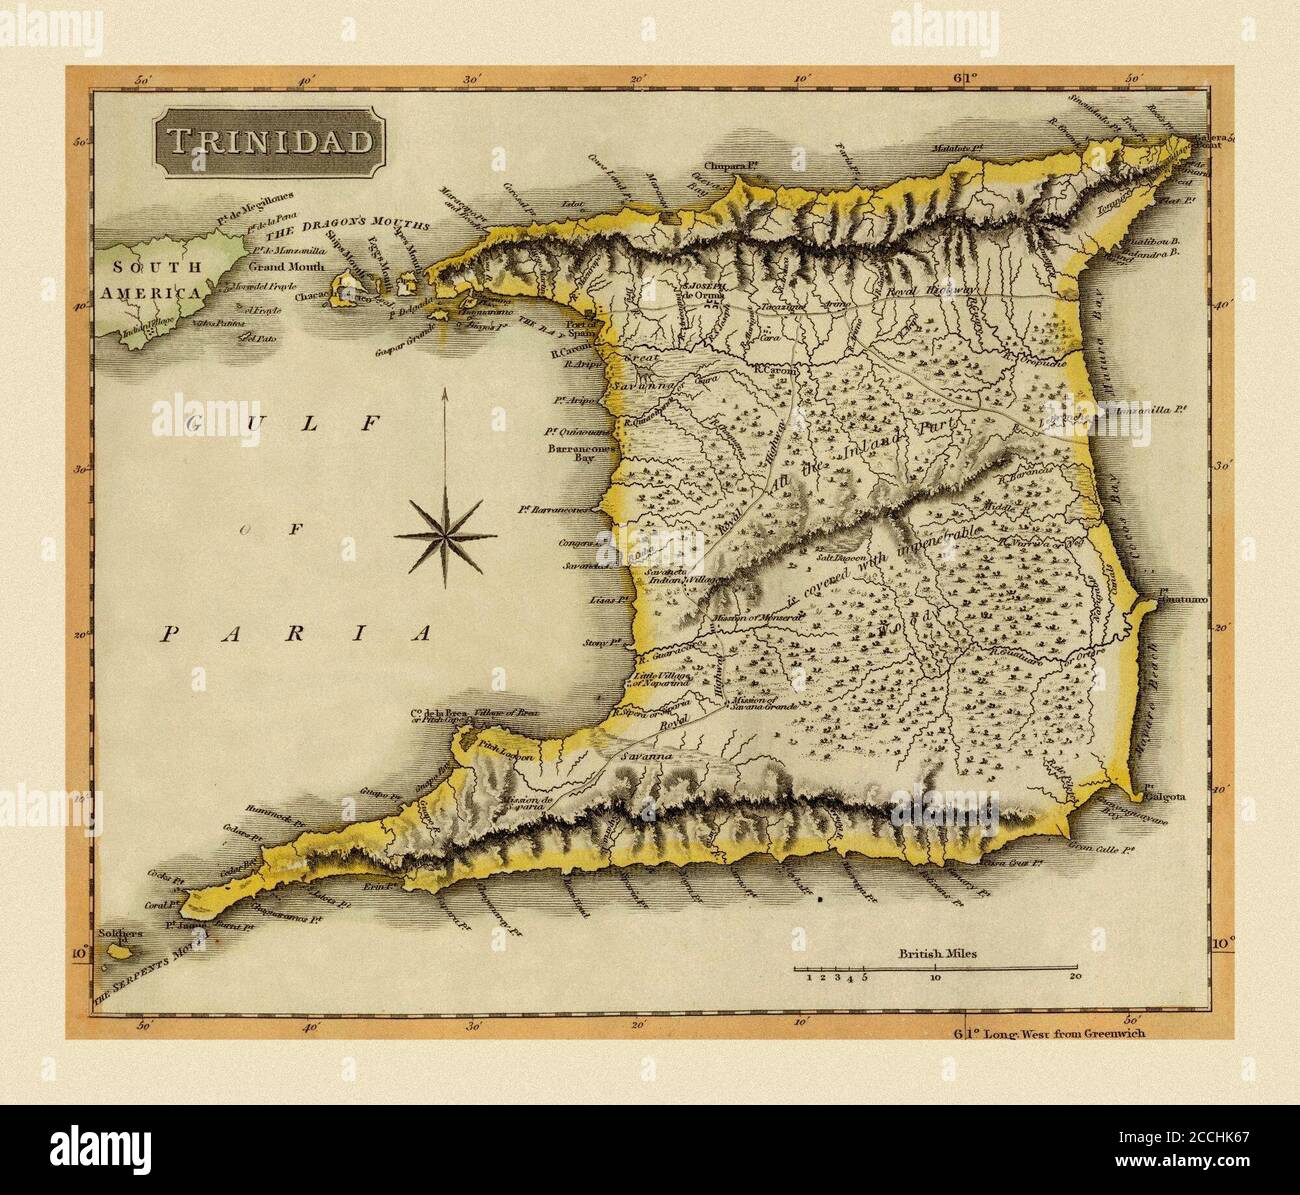 Karte Von Trinidad 1816 Stockfoto